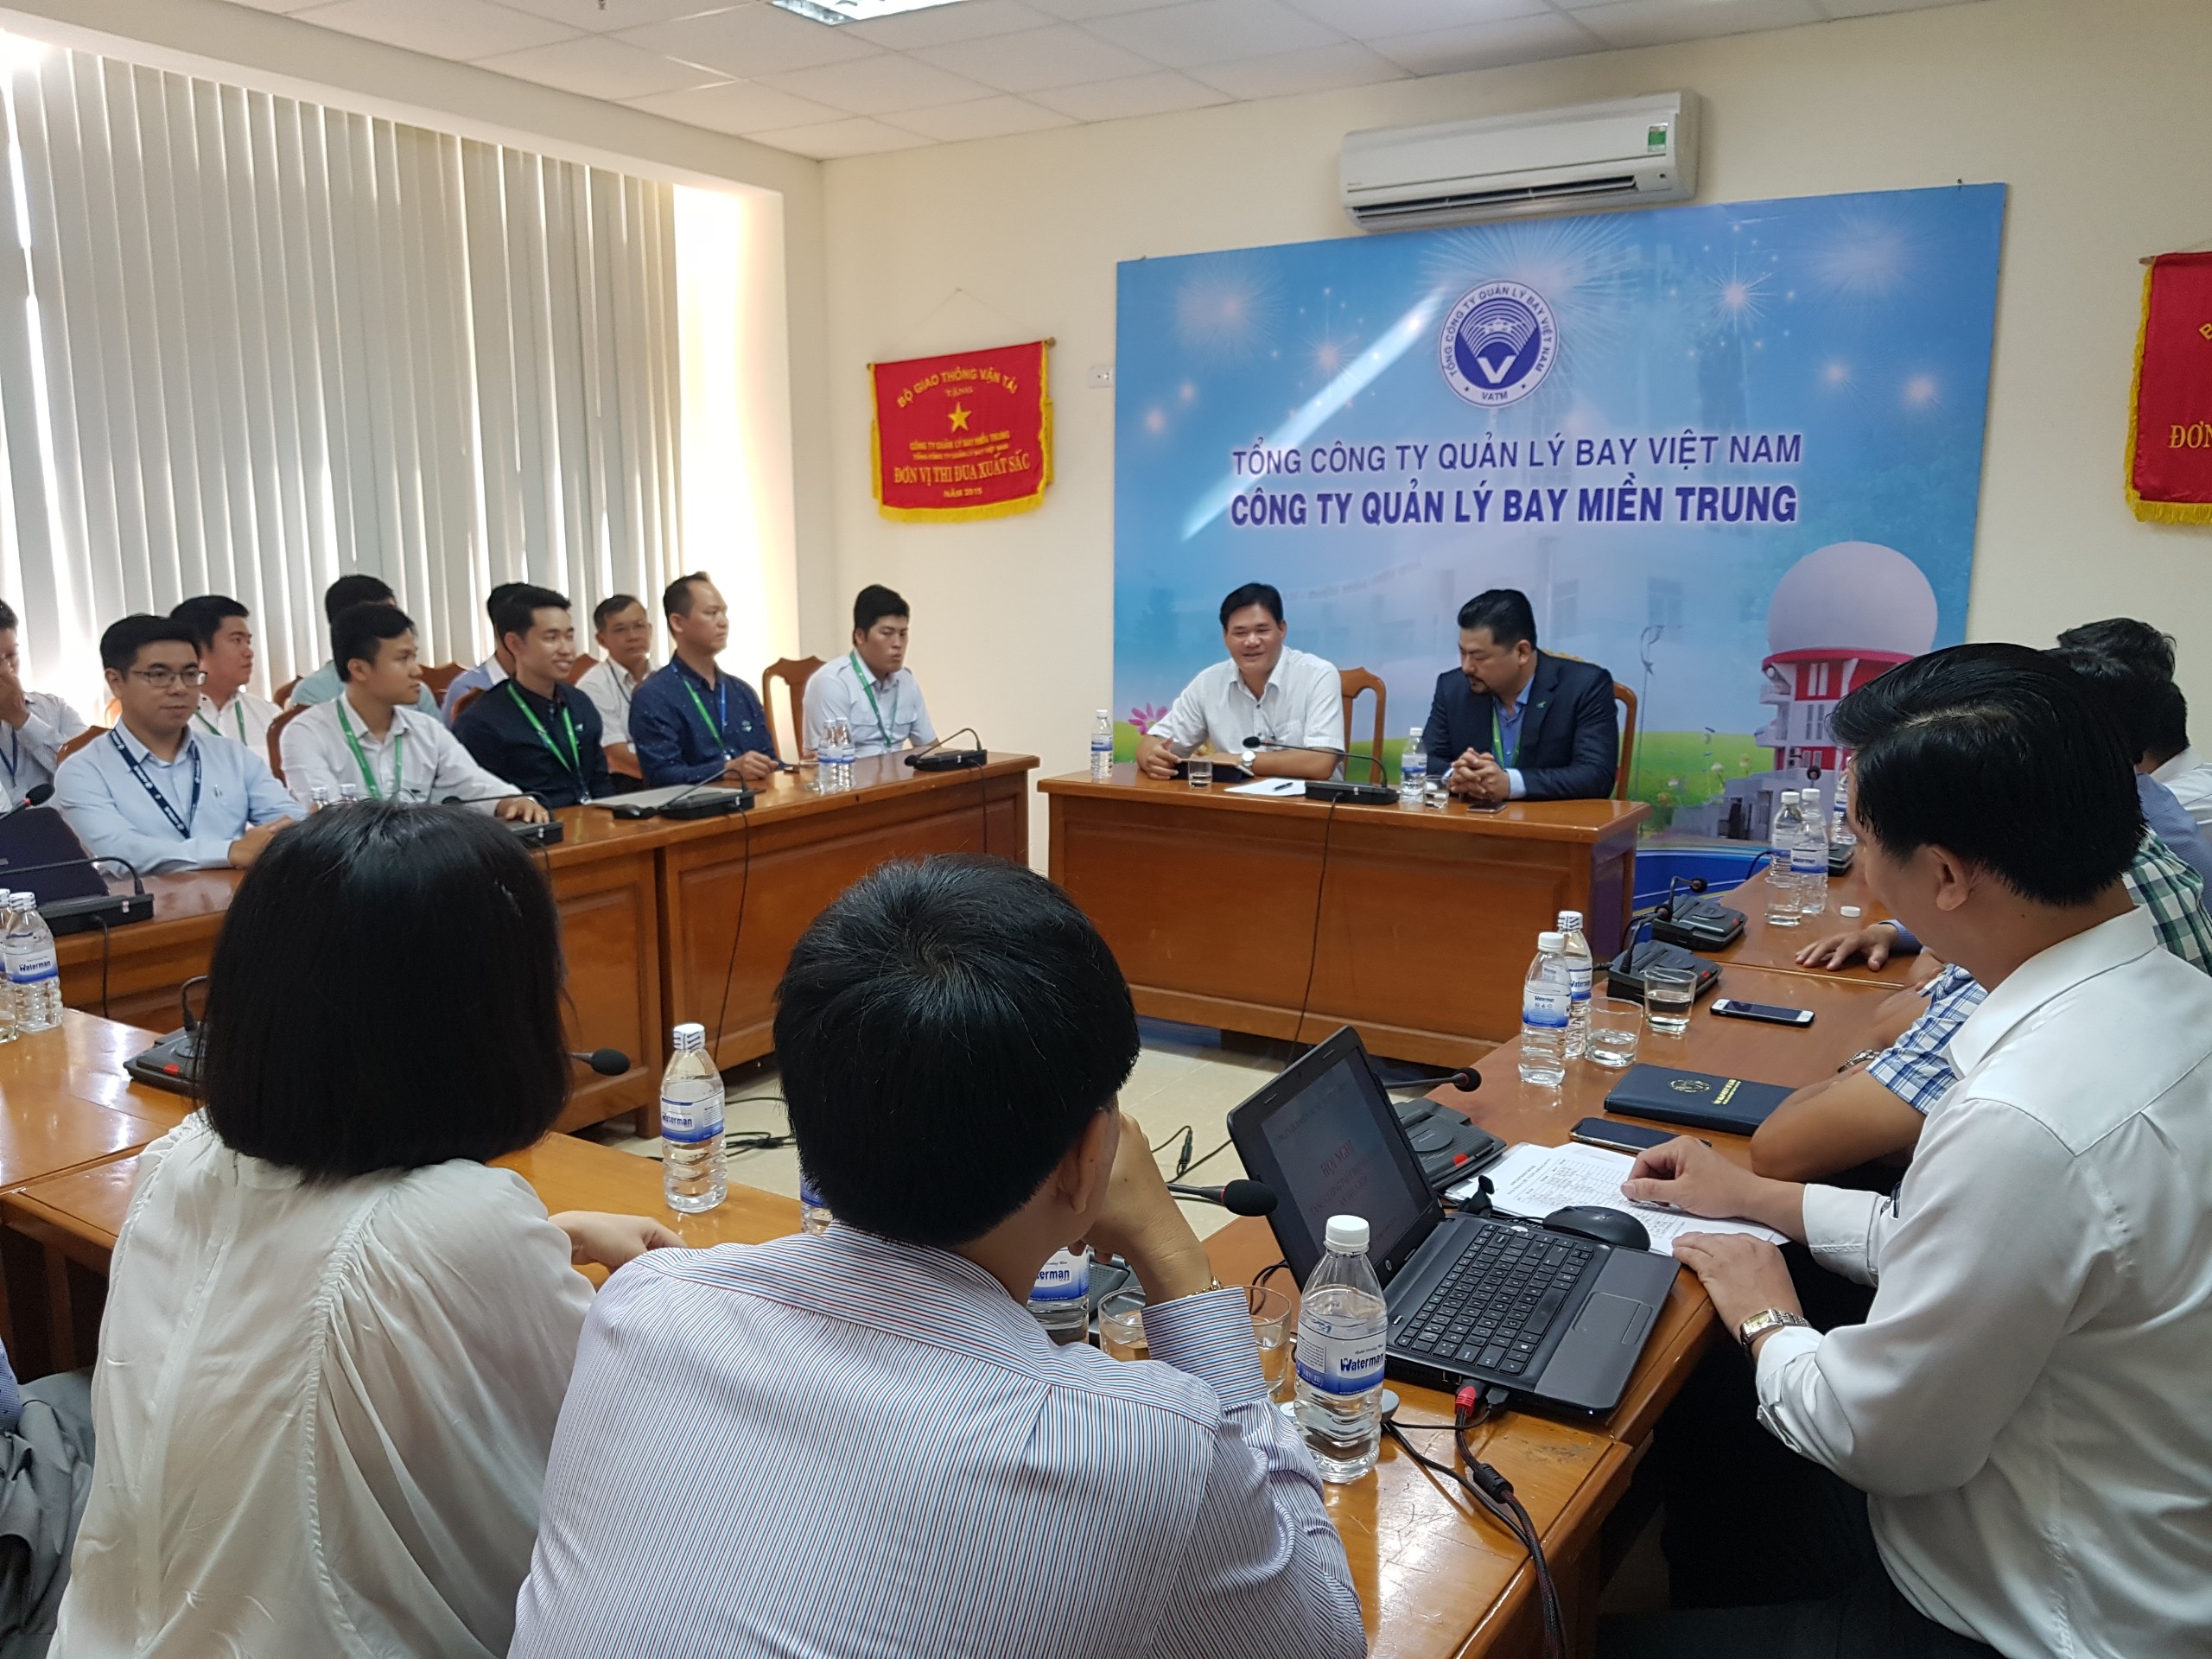 Hội nghị phối hợp bảo đảm an toàn bay giữa Công ty Quản lý bay miền Trung và Công ty TNHH Hàng không Tre Việt